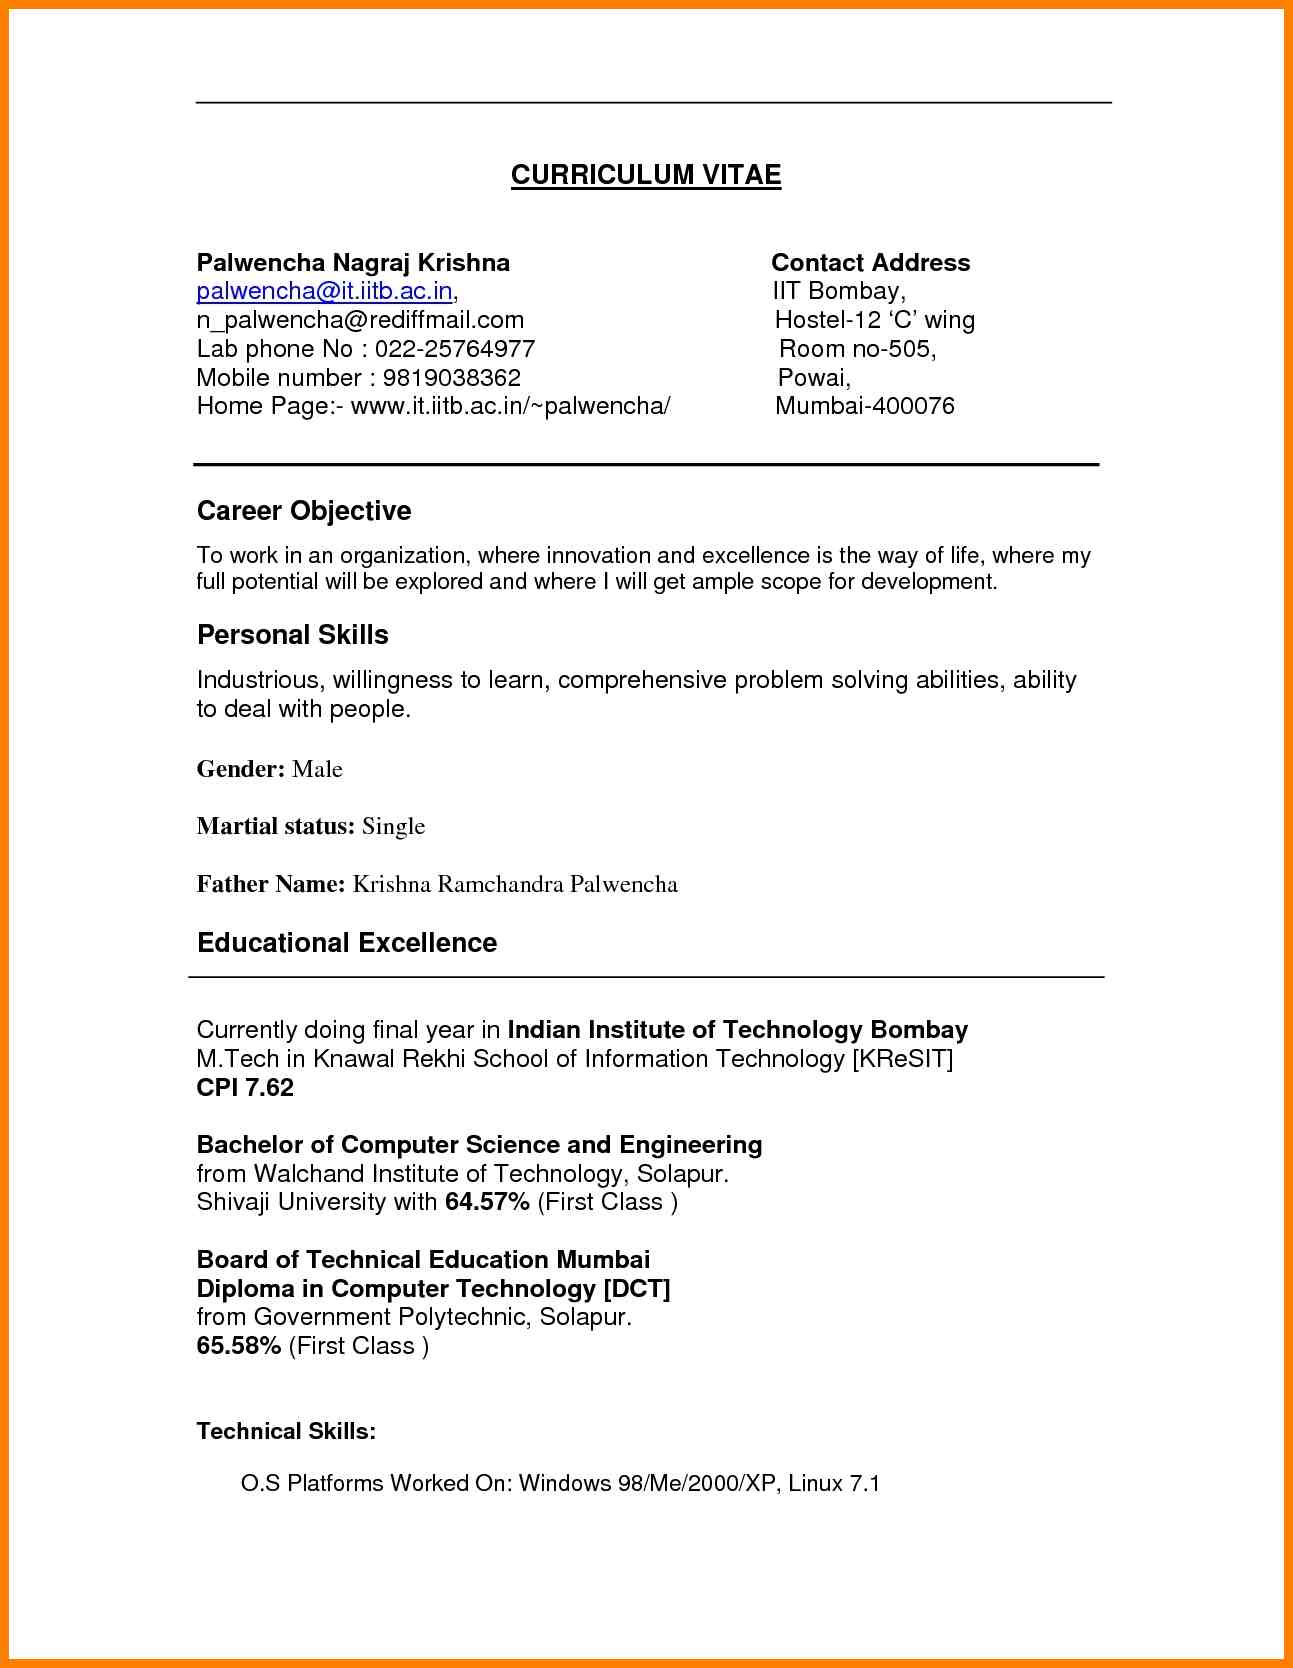 Resume Skills List Personal Skills List Resume Doc672870 Personal Skills Resume Personal Attributes Resume Personal Skills For A Resume resume skills list|wikiresume.com